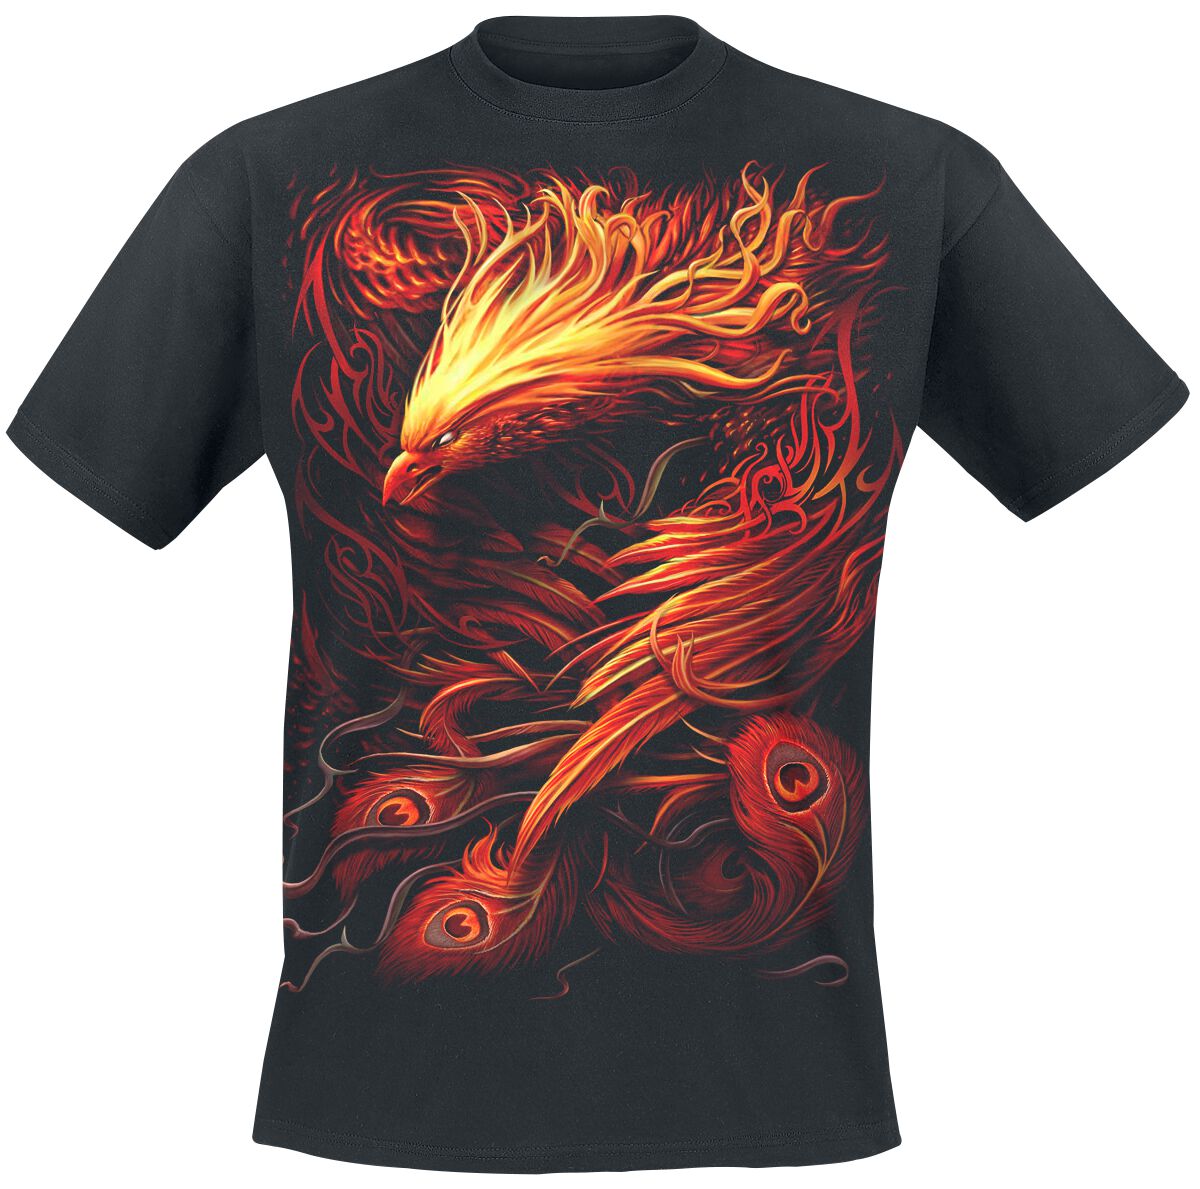 Spiral Phoenix Arisen T-Shirt schwarz in M